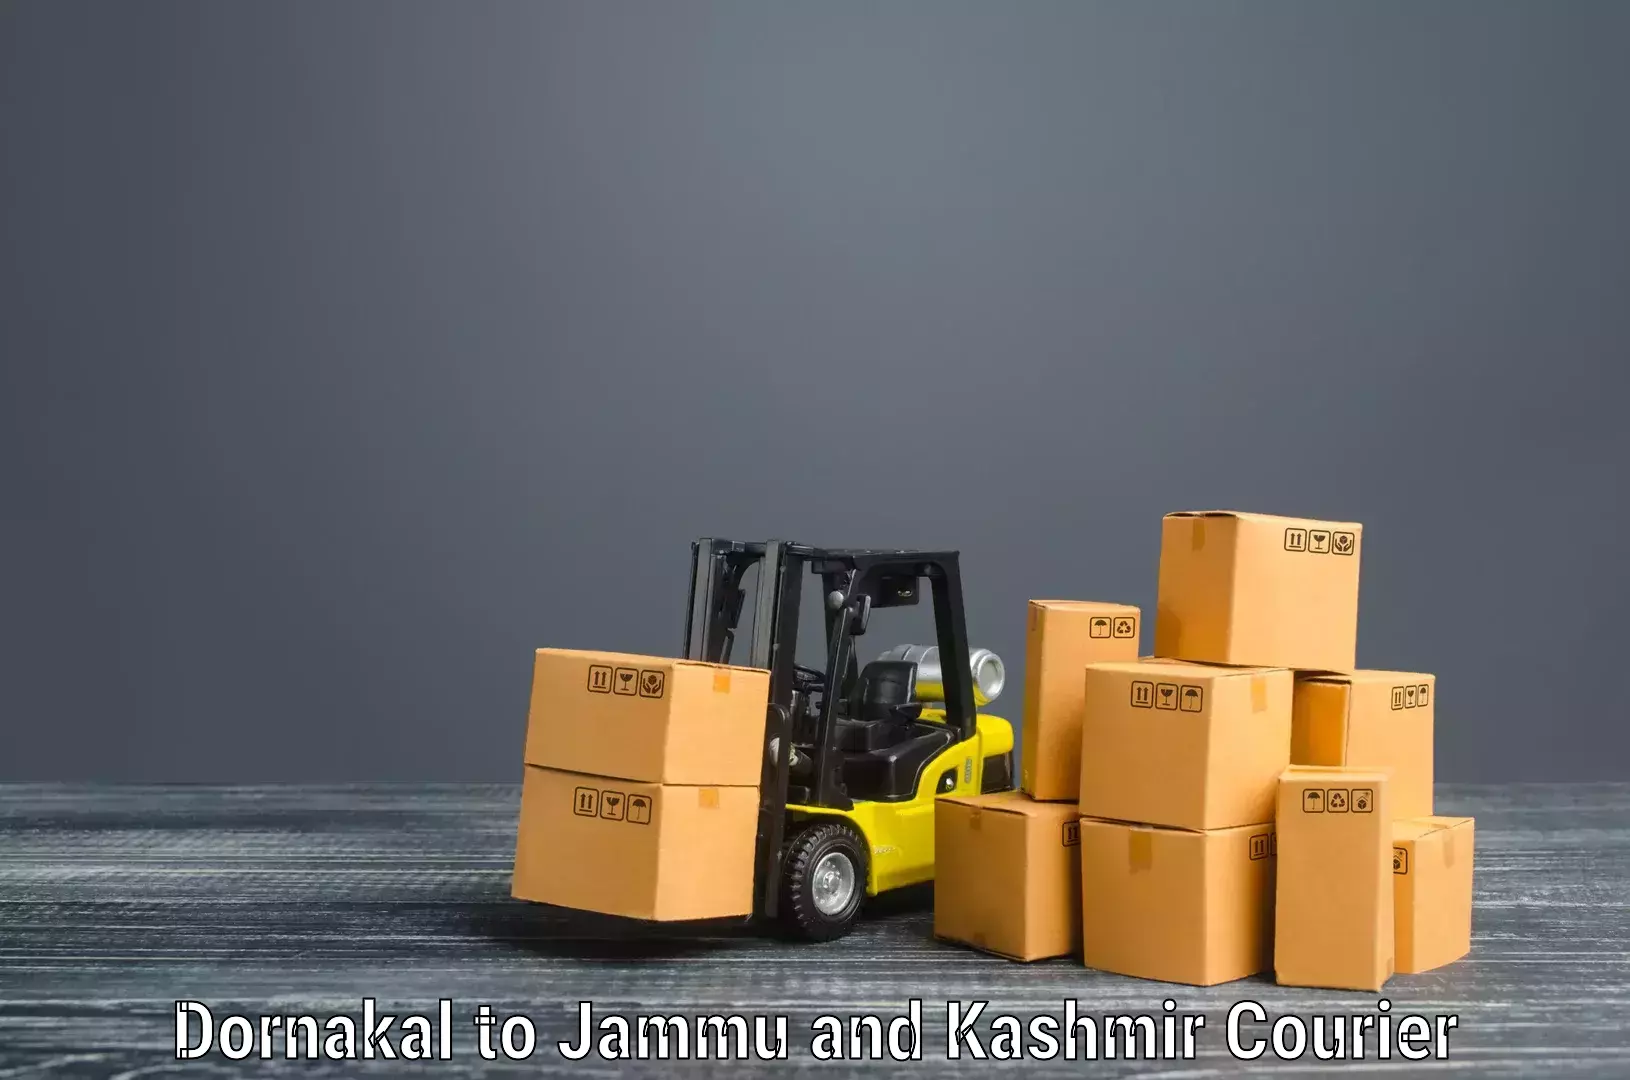 Furniture transport service Dornakal to Jammu and Kashmir